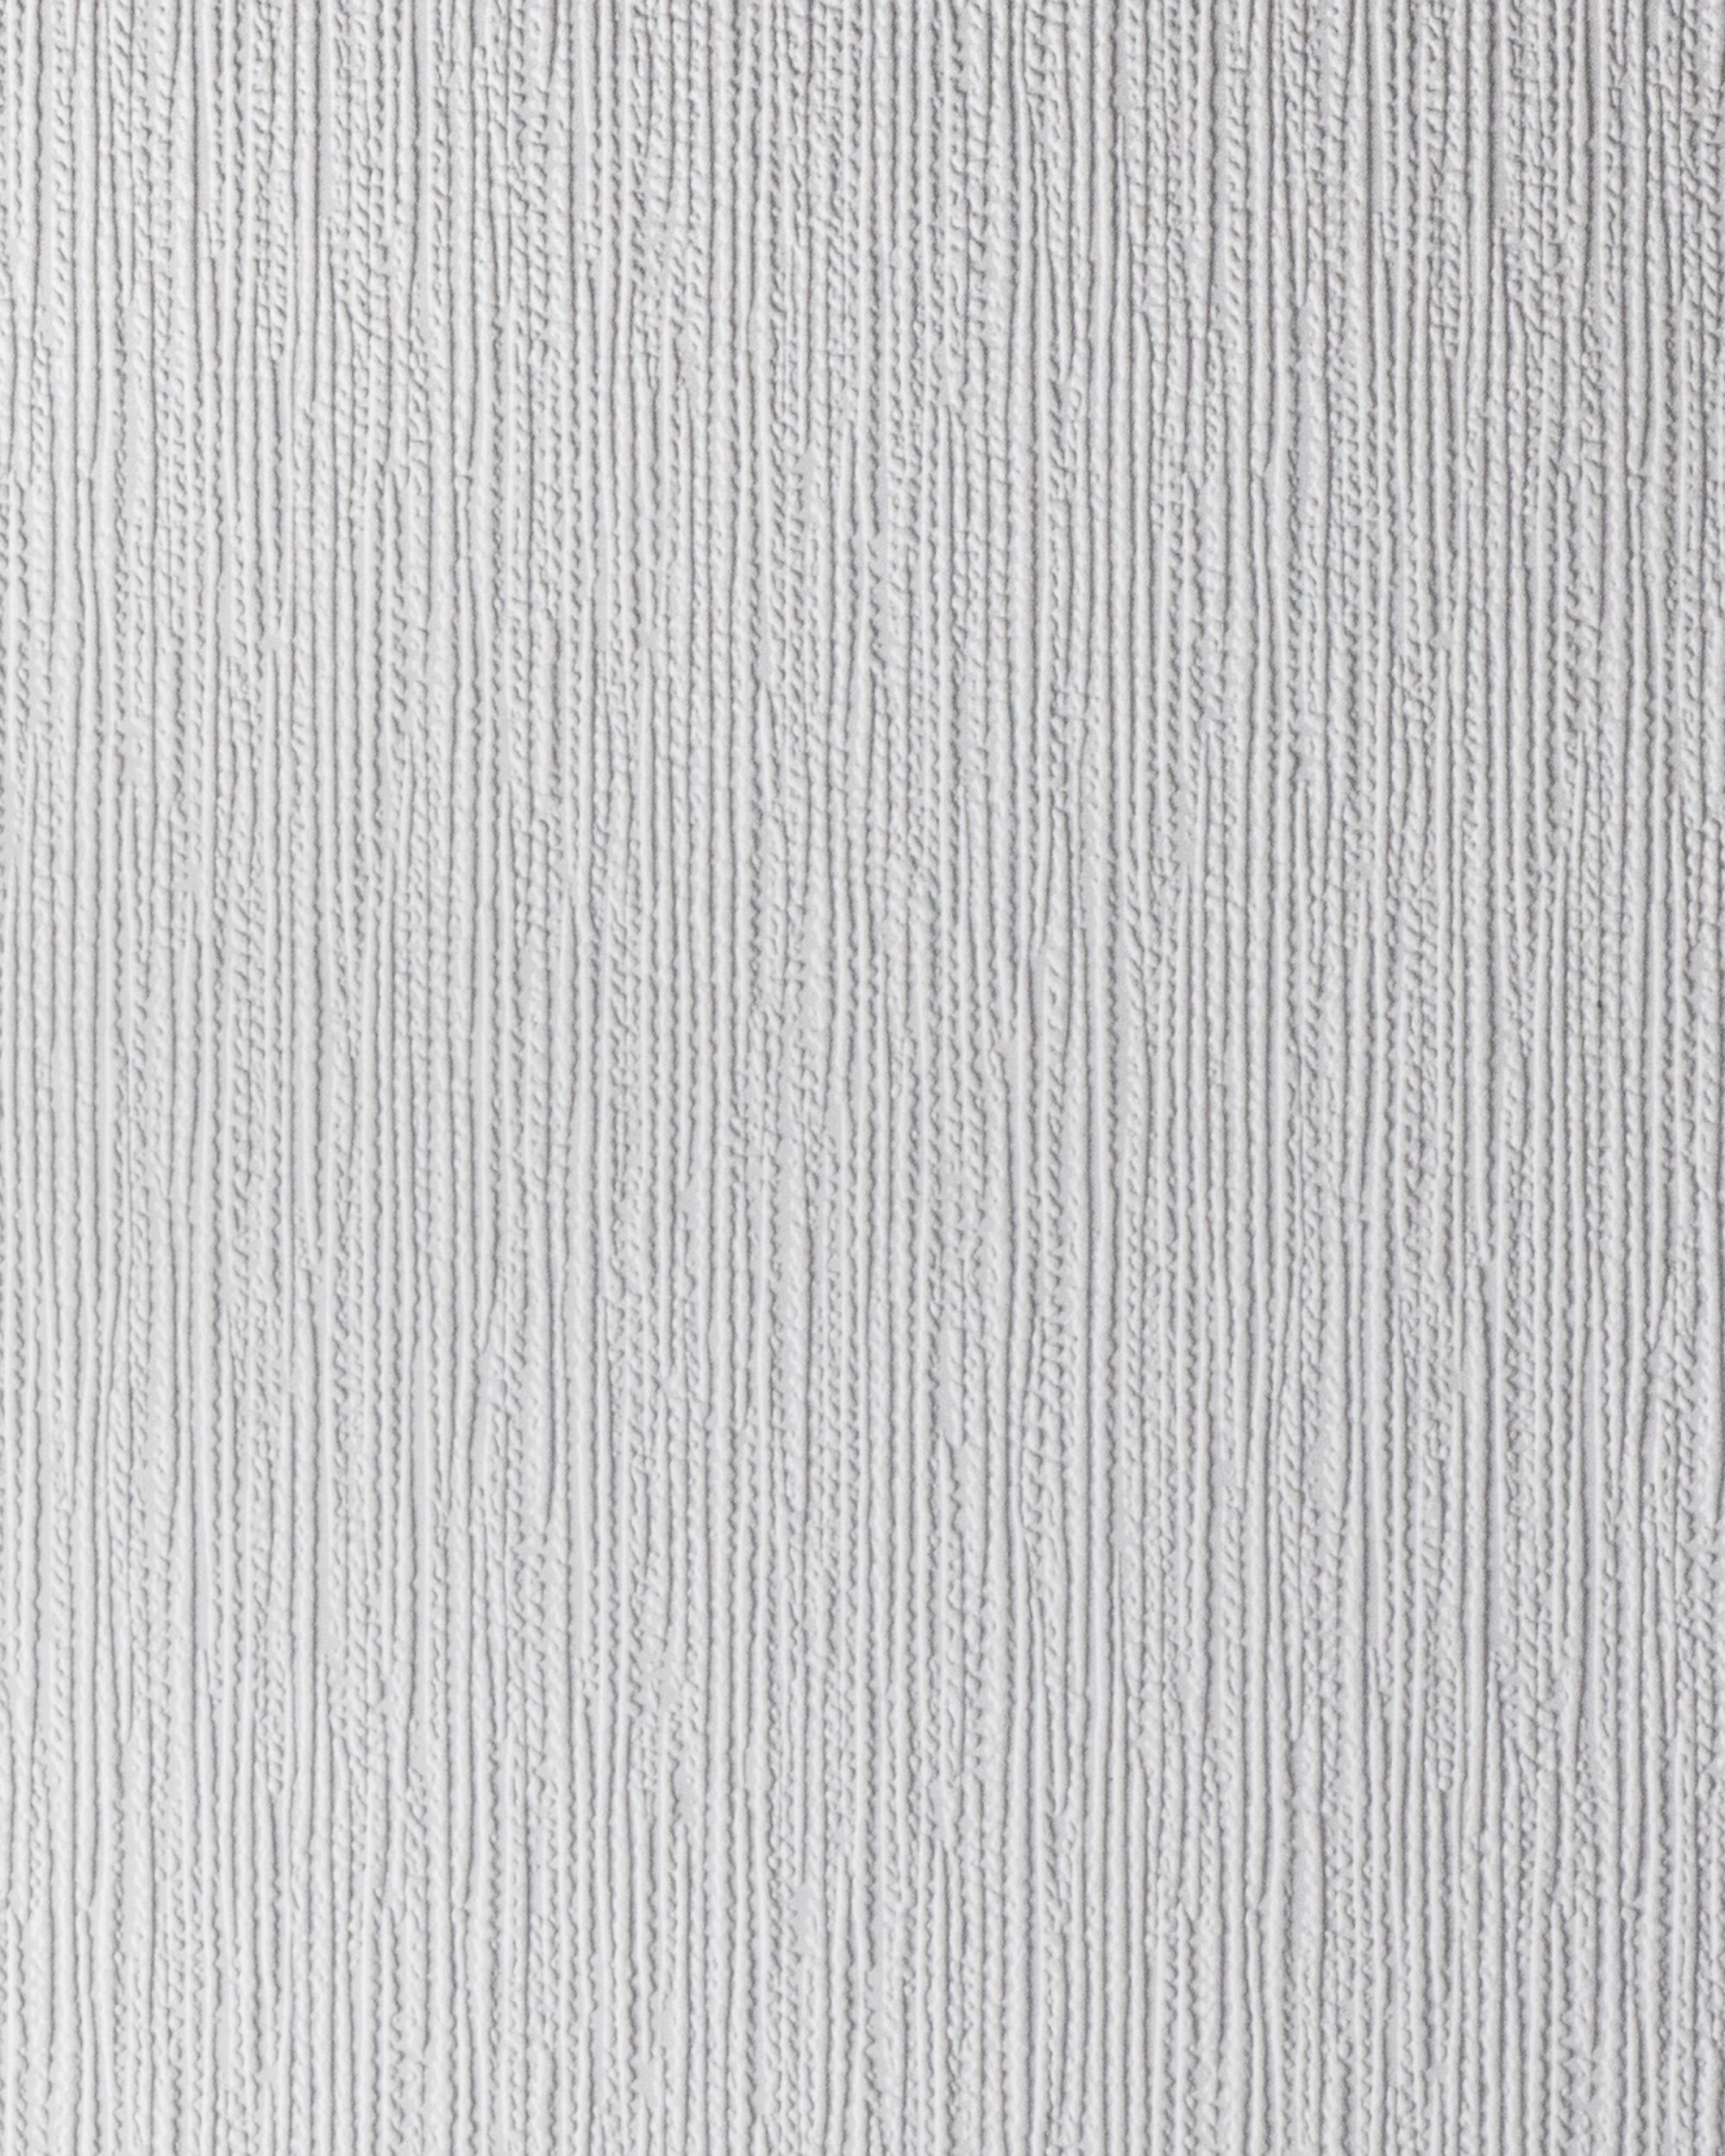 50115w Bellante - Ivory , HD Wallpaper & Backgrounds